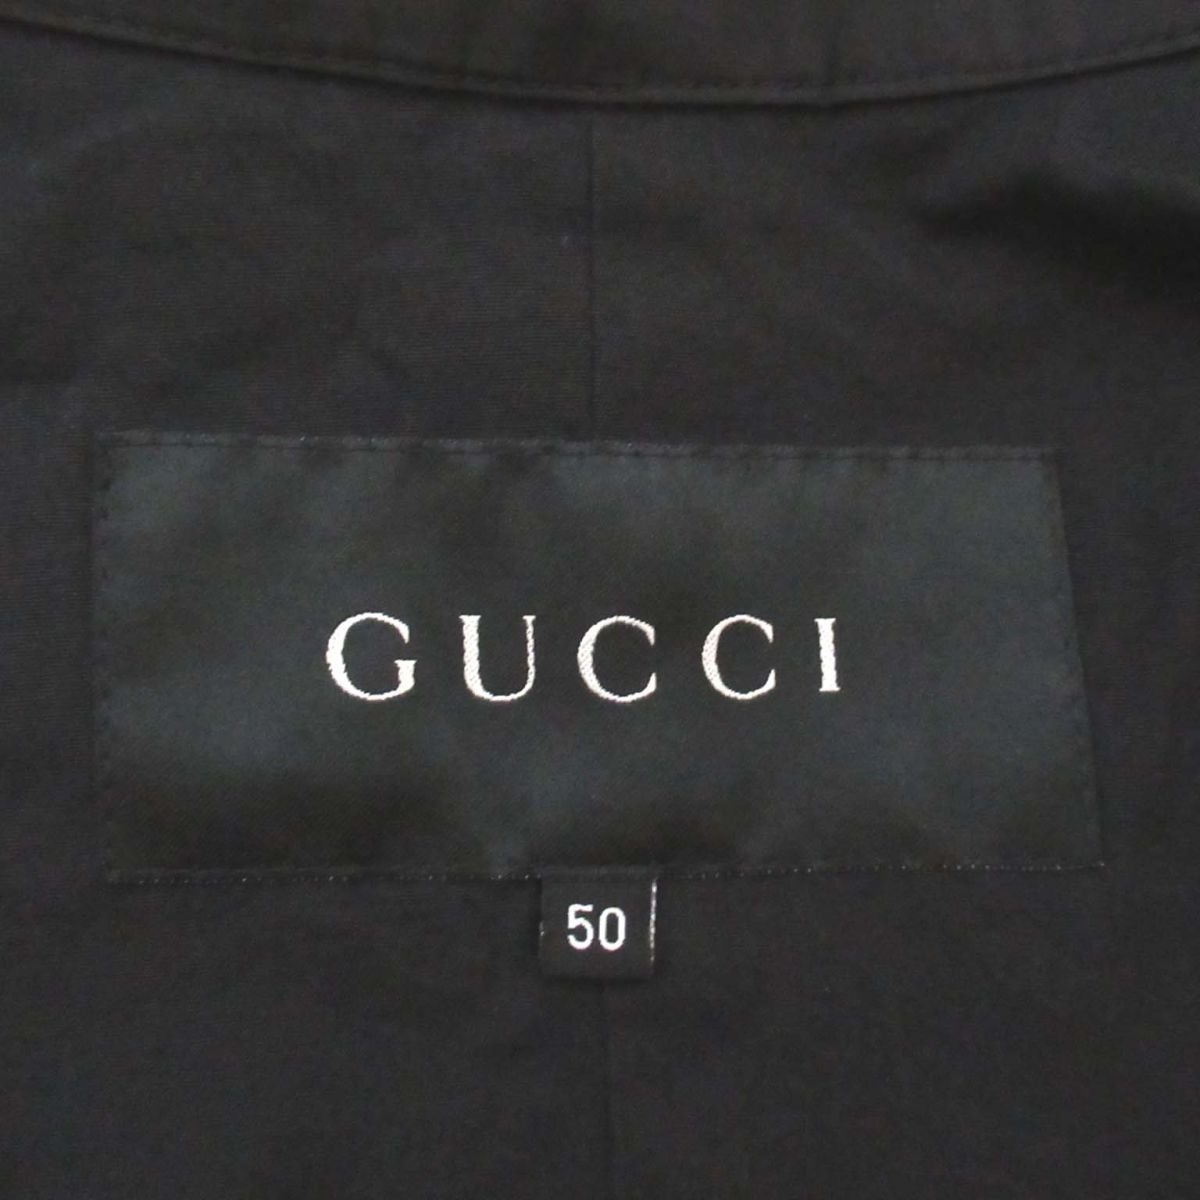  почти прекрасный товар GUCCI Gucci Tom Ford период bell tedo нейлон Safari жакет полупальто размер 50 чёрный черный C0305